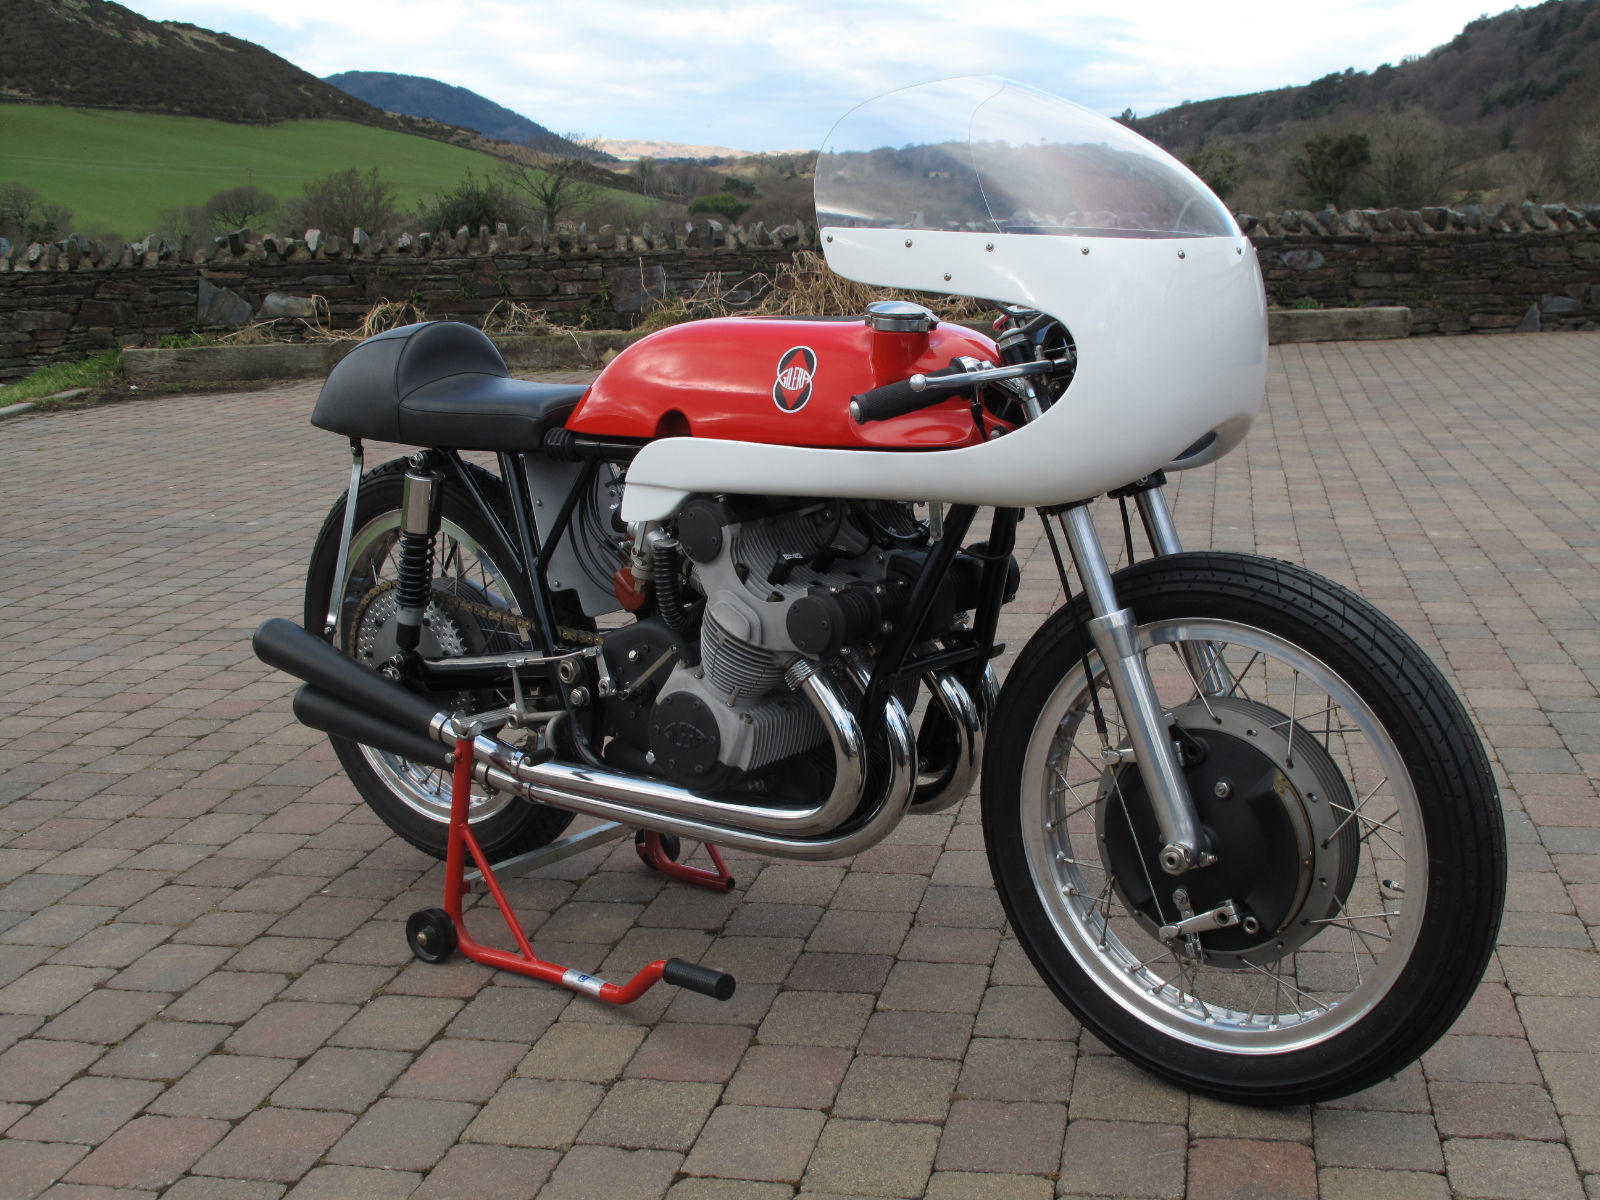 Umbo Masetti Gilera 500cc 1950 1:22 scale model motorcycle 